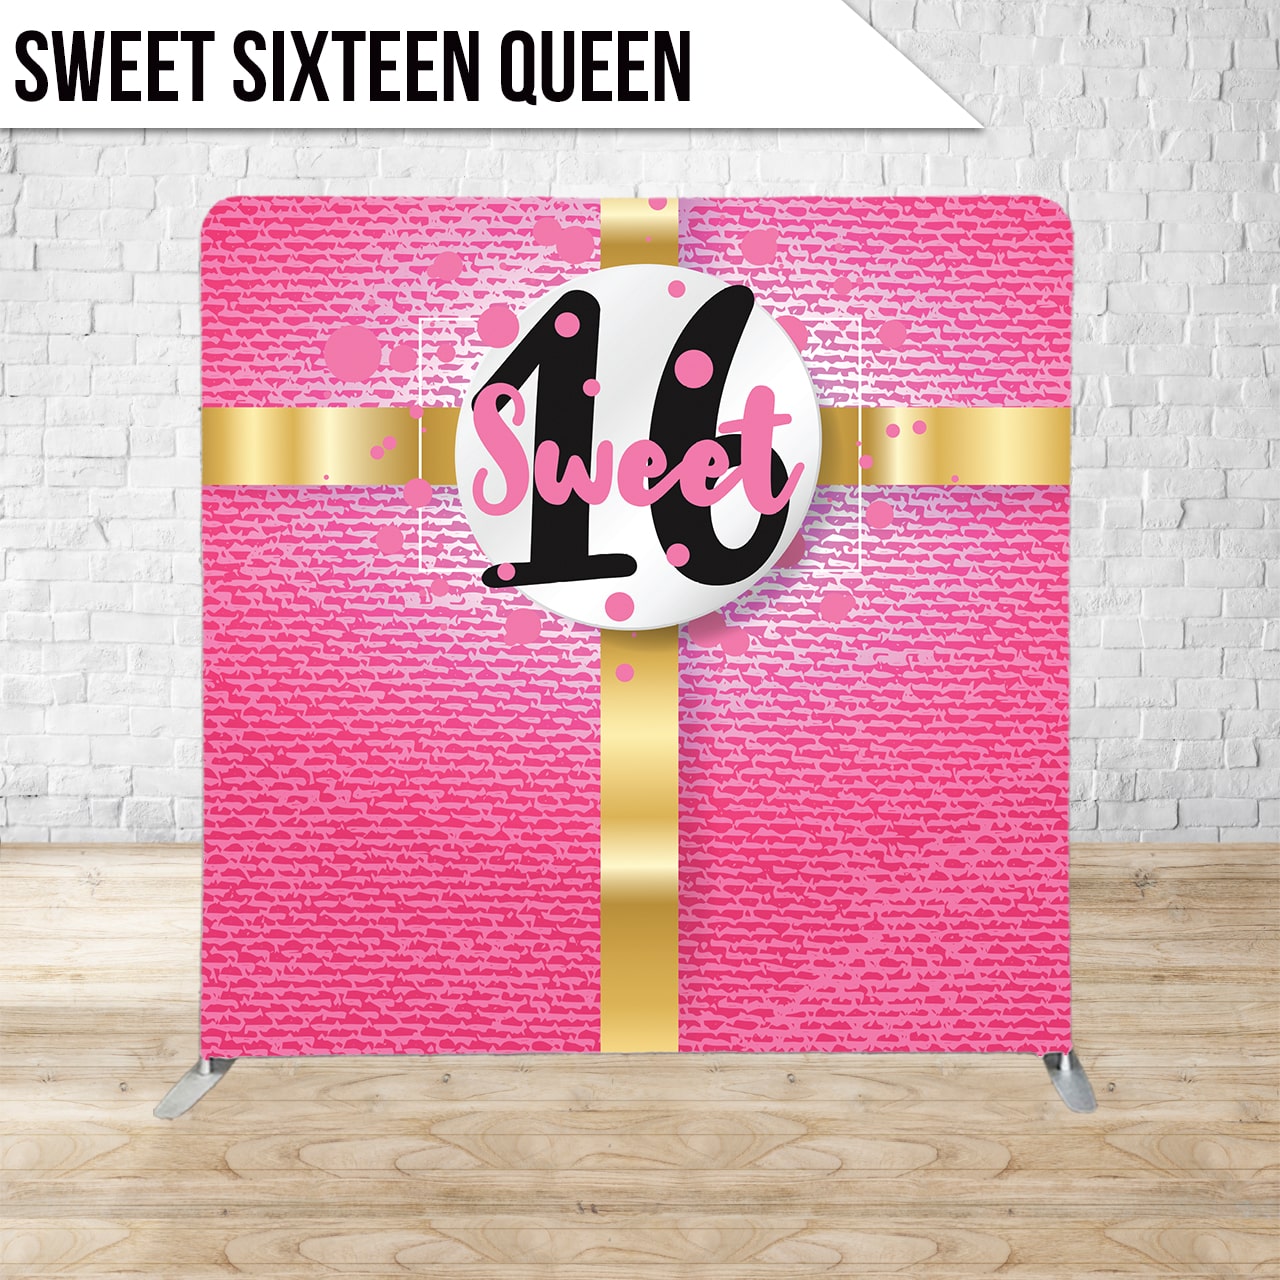 Sweet Sixteen Queen